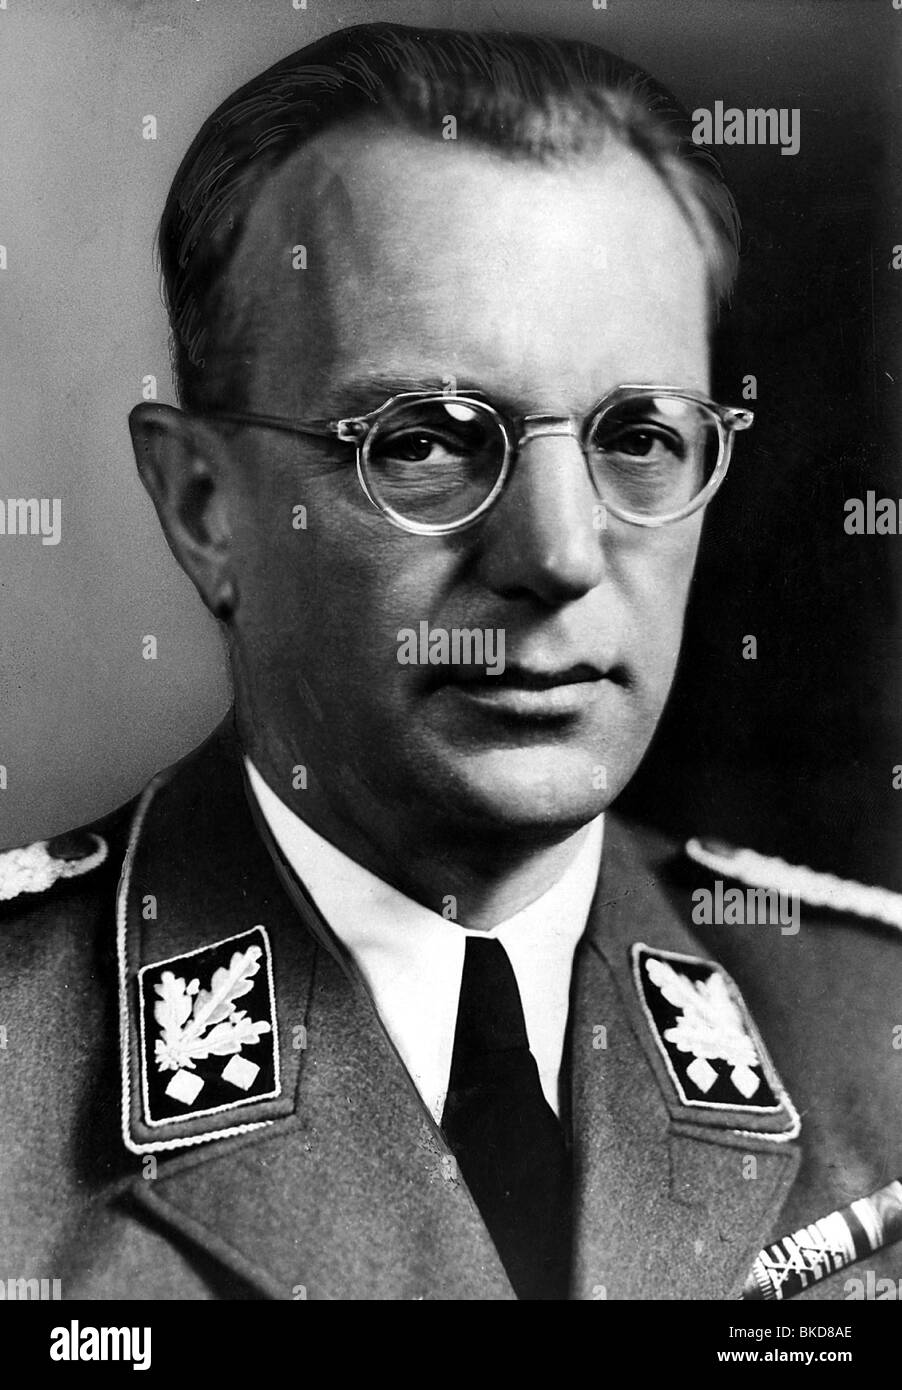 Seyss-Inquart, Arthur, 22.7.1892 - 16.10.1946, österreichischer Politiker (NSDAP), Porträt, in SS-Uniform, ca. 1940, Stockfoto